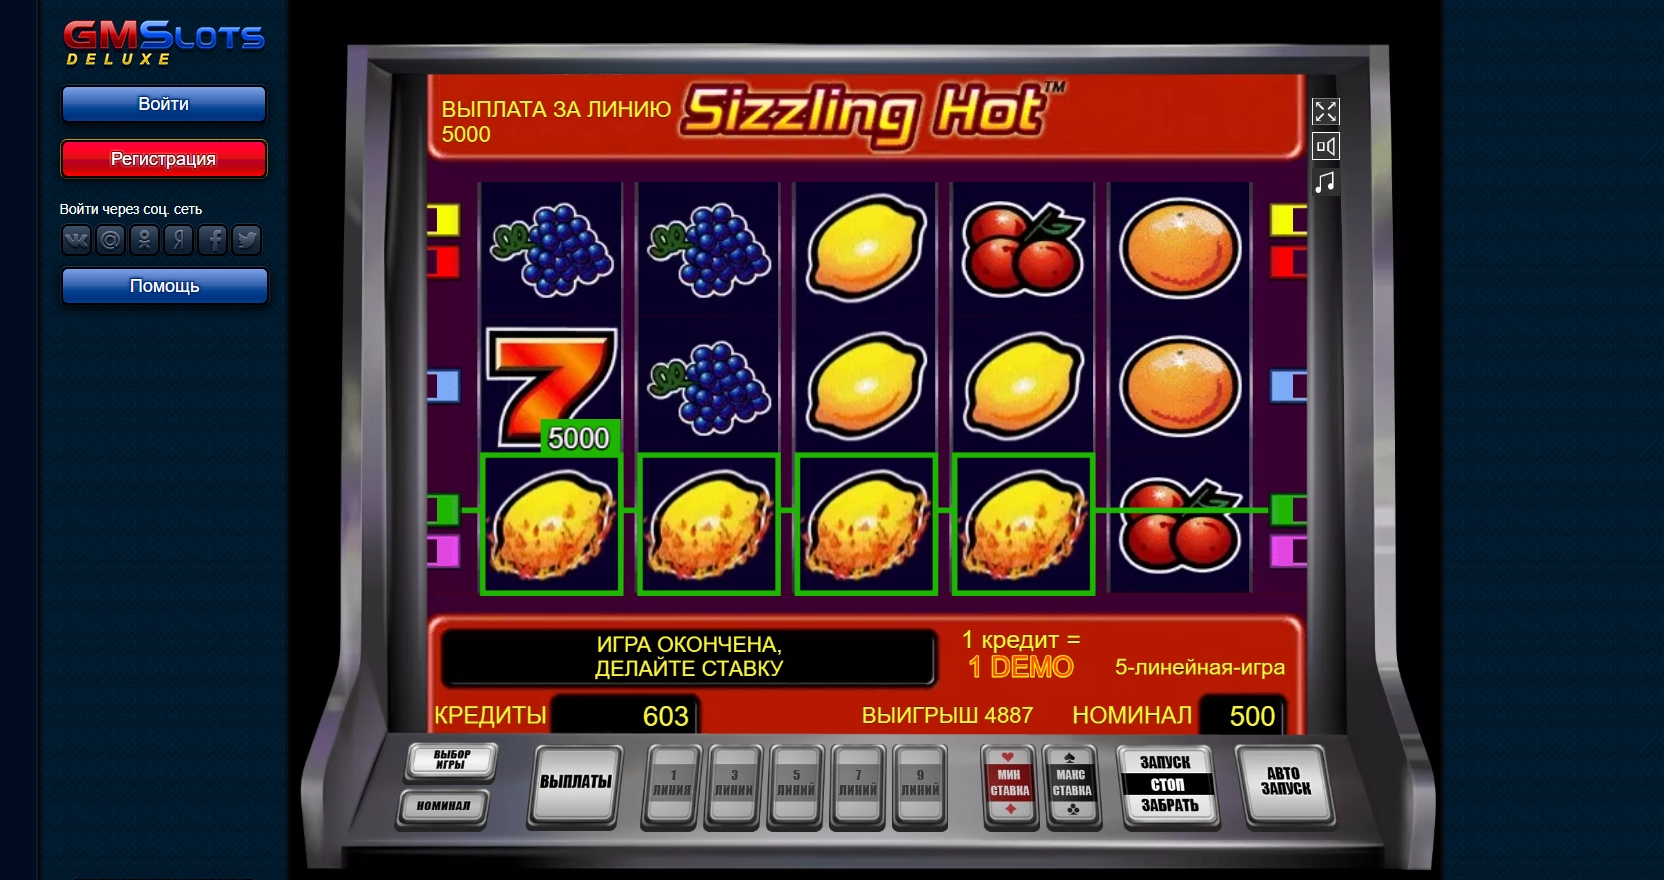 Игровые автоматы лотерея форум казино рояль фильм 2006 смотреть онлайн 720 в хорошем